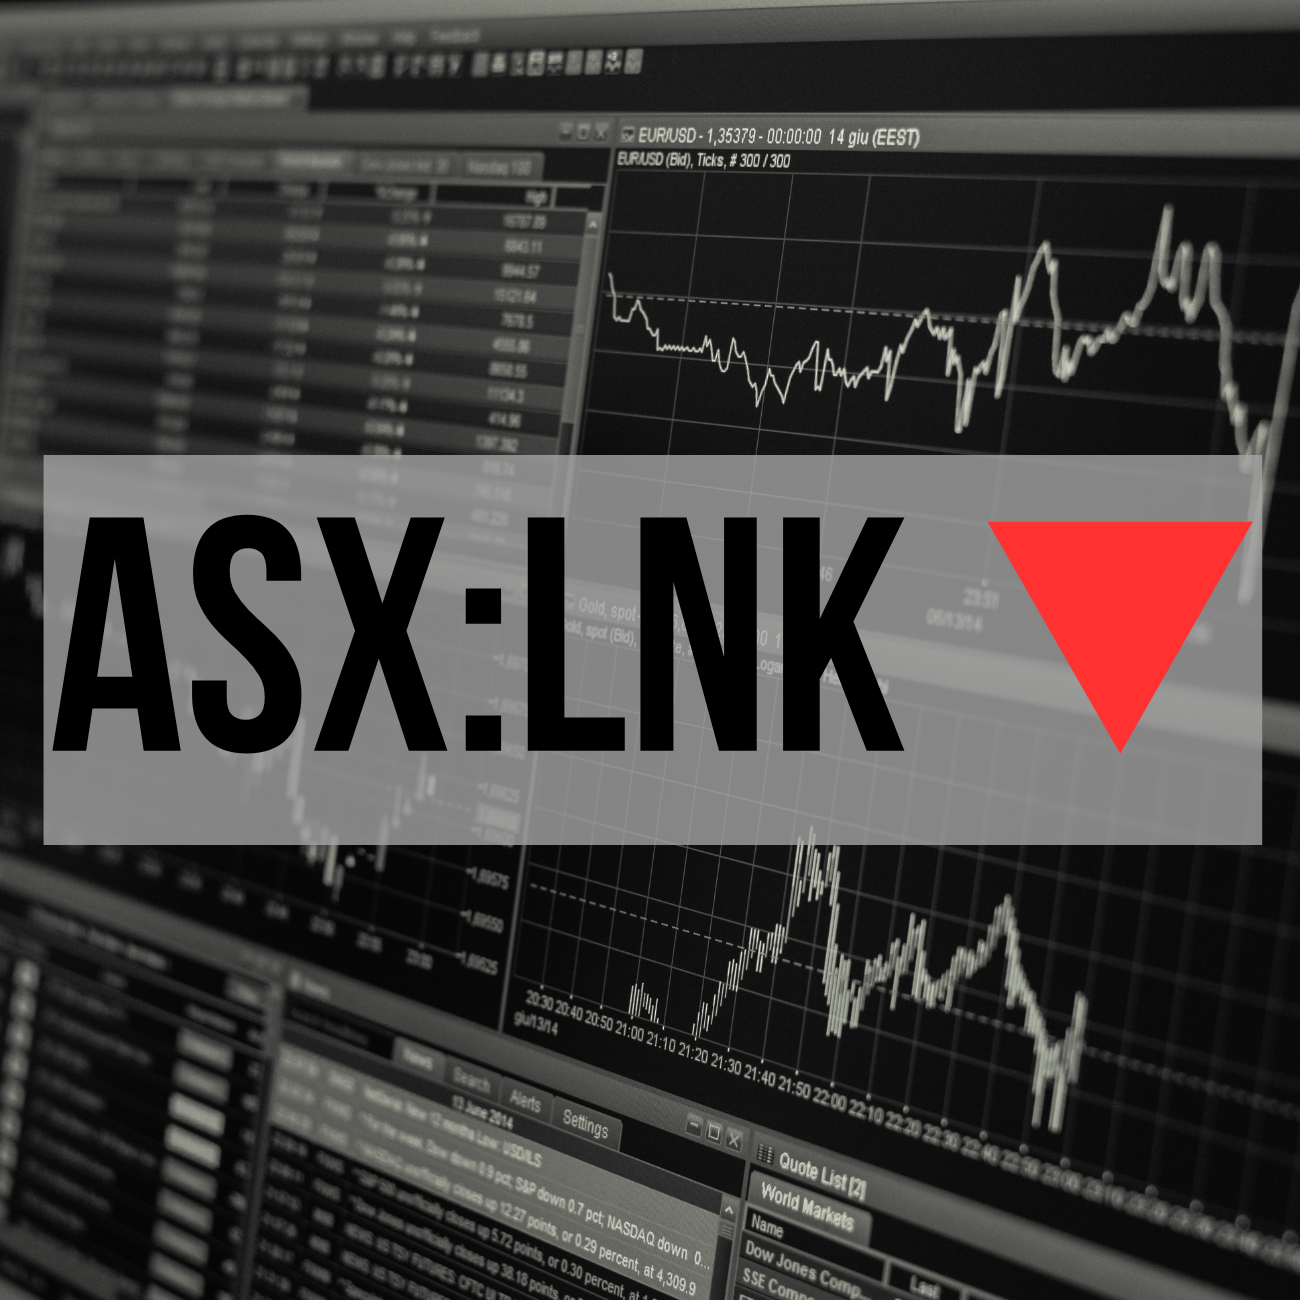 ASX:LNK feature ticker